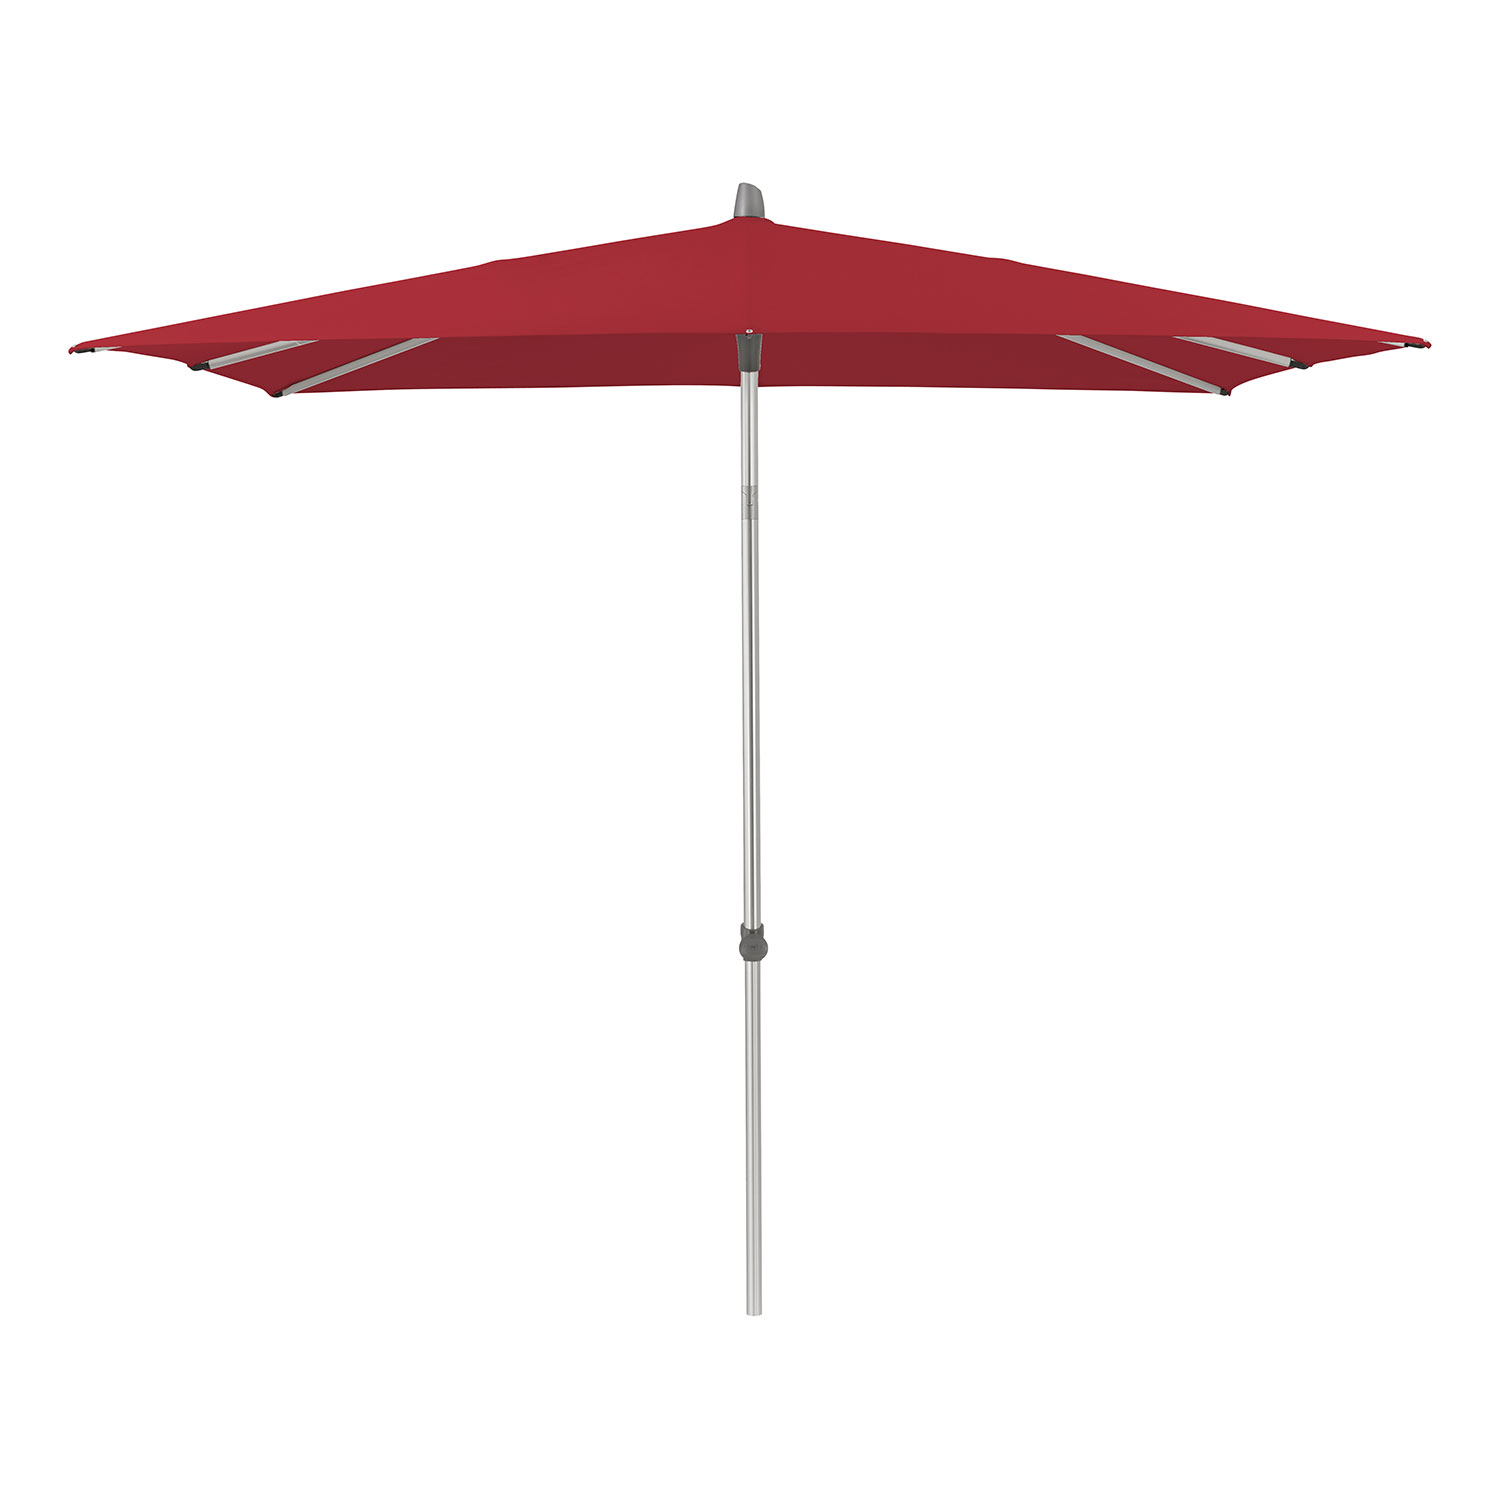 Glatz Alu-smart parasoll 200×200 cm kat.5 646 rubino